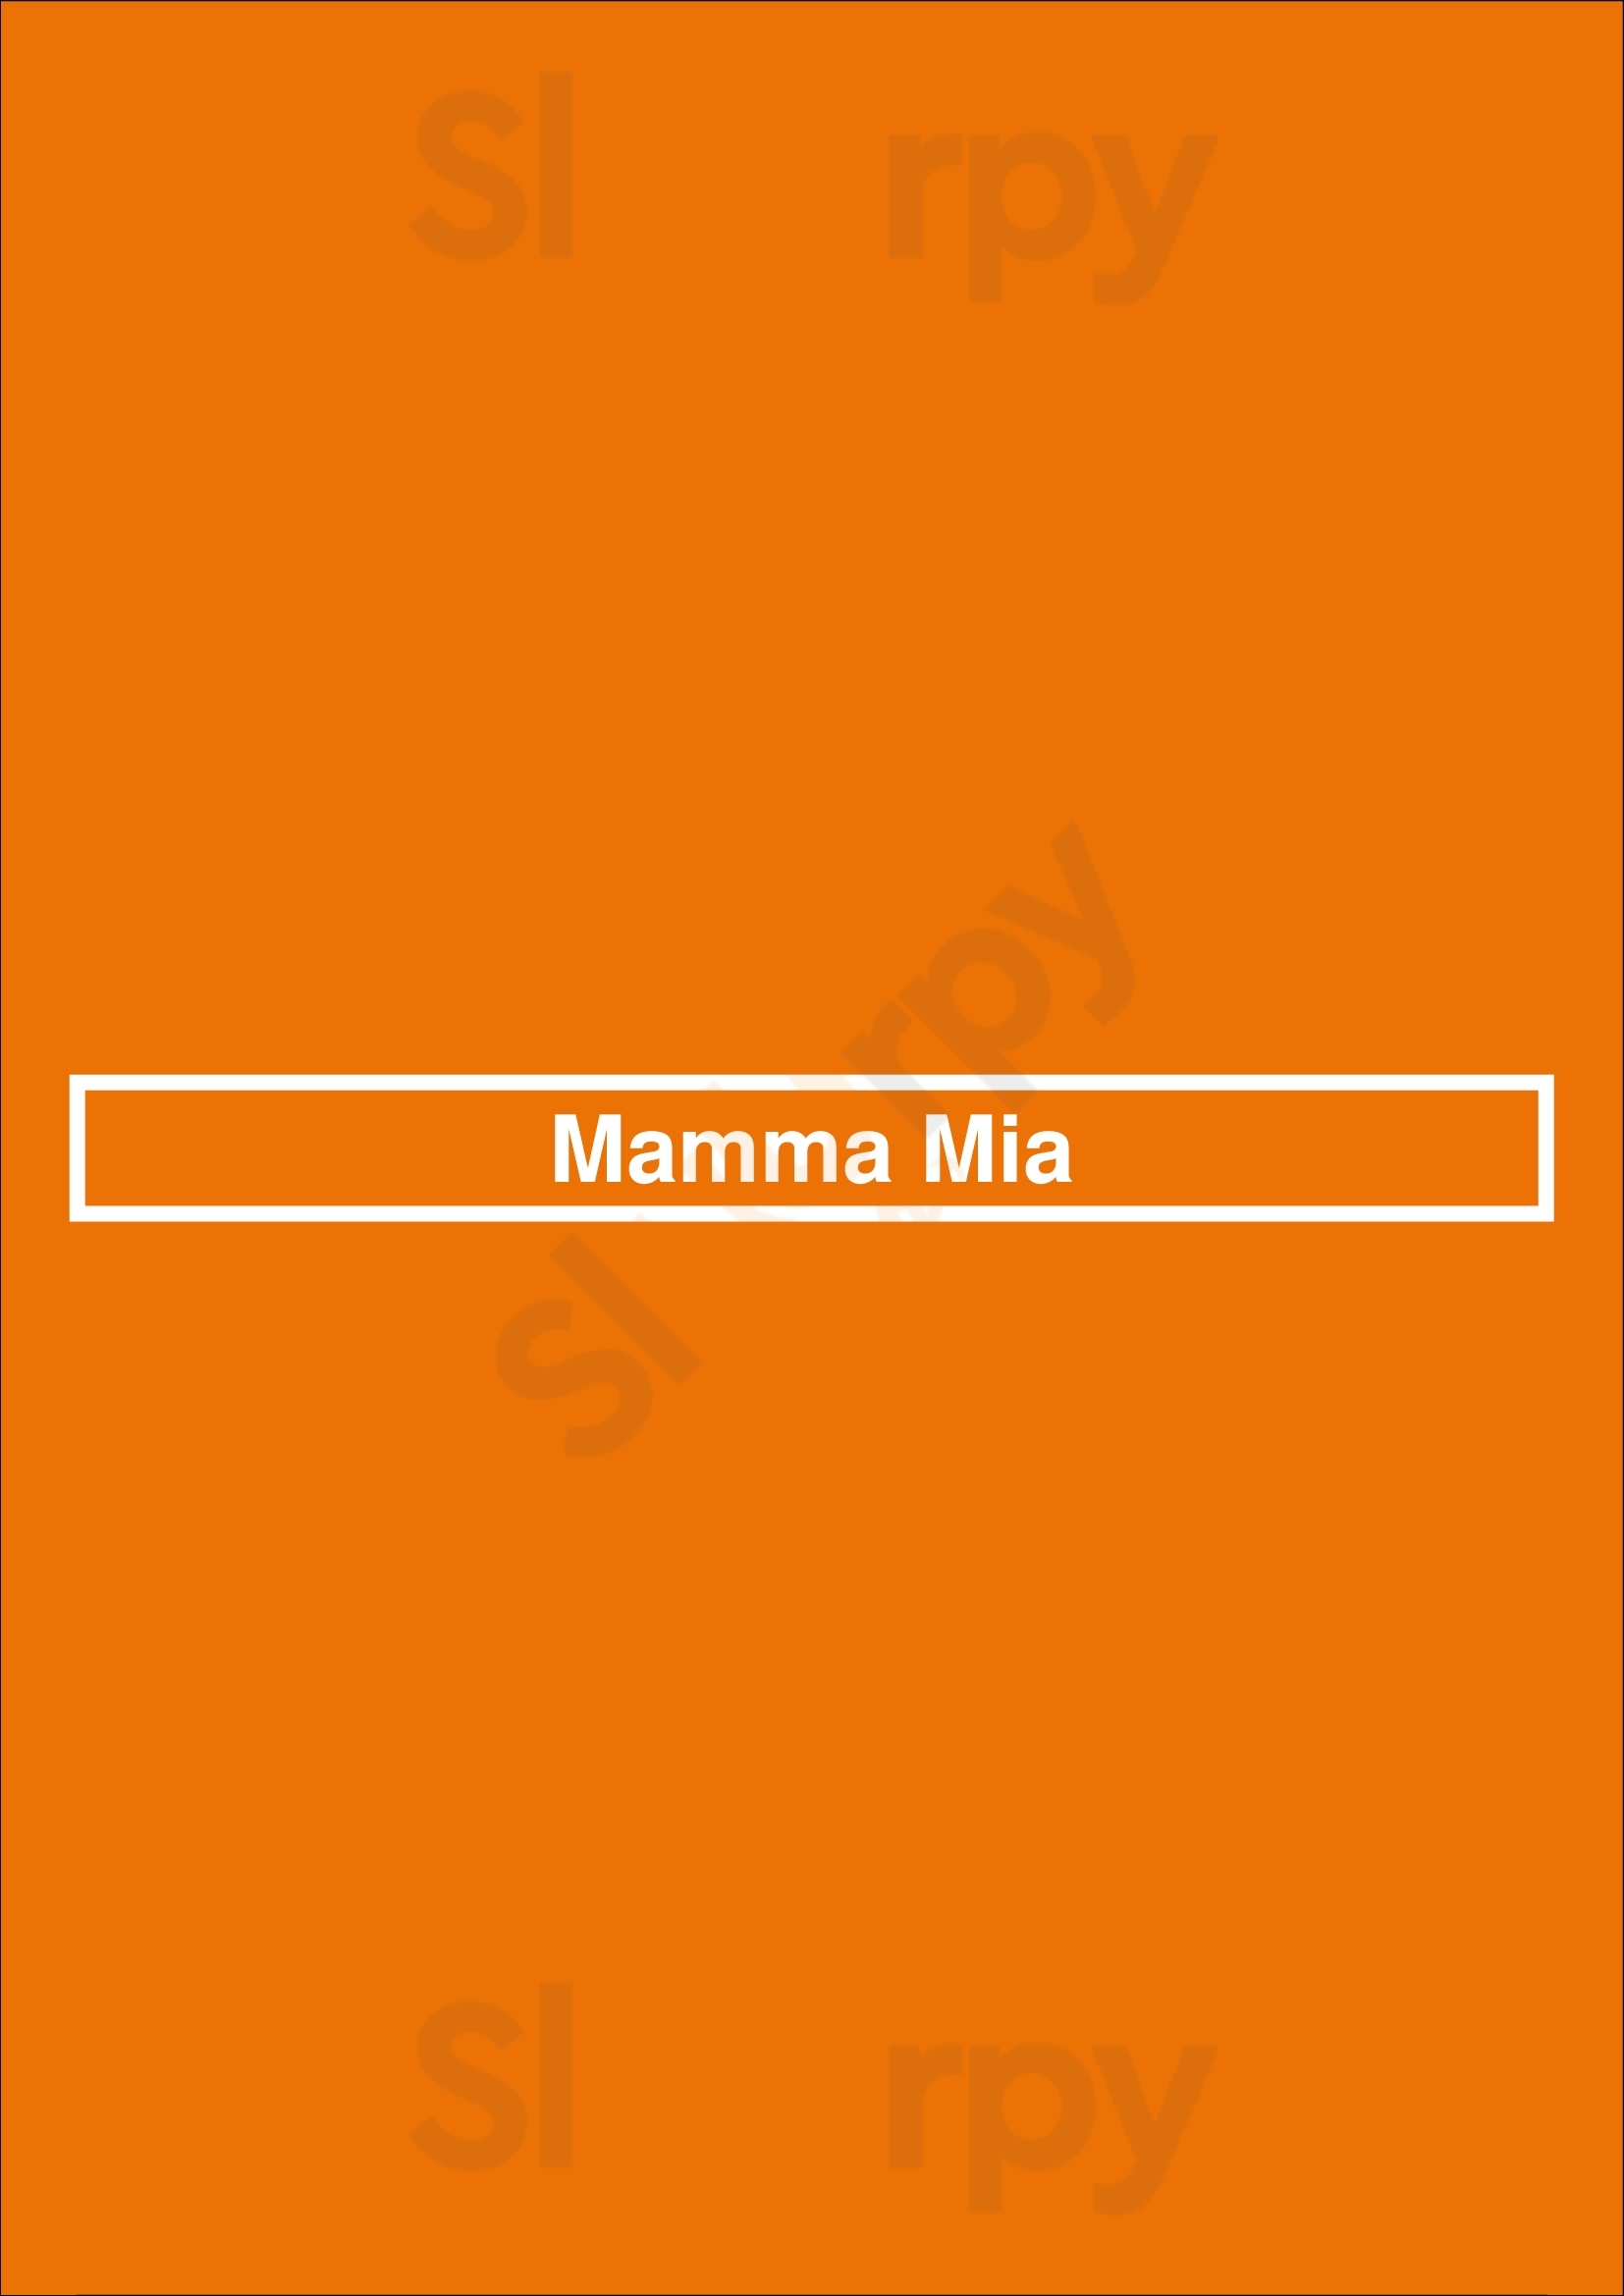 Mamma Mia Barcelona Menu - 1